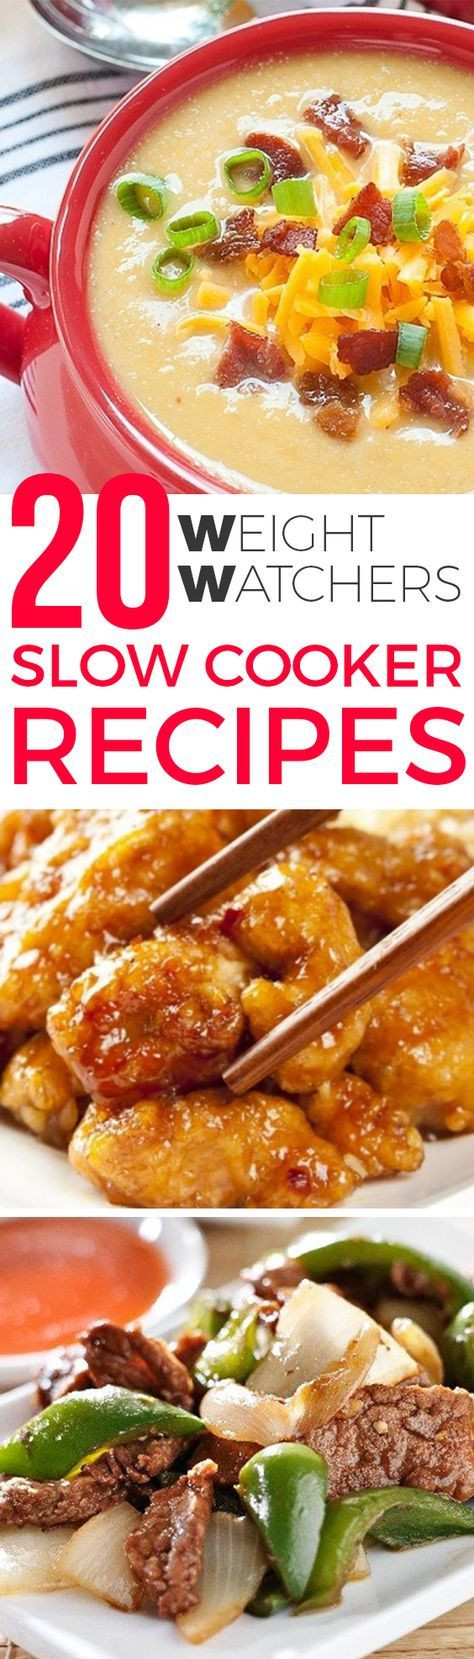 Low Calorie Crock Pot Dinners
 Best 25 Healthy crock pot meals ideas on Pinterest